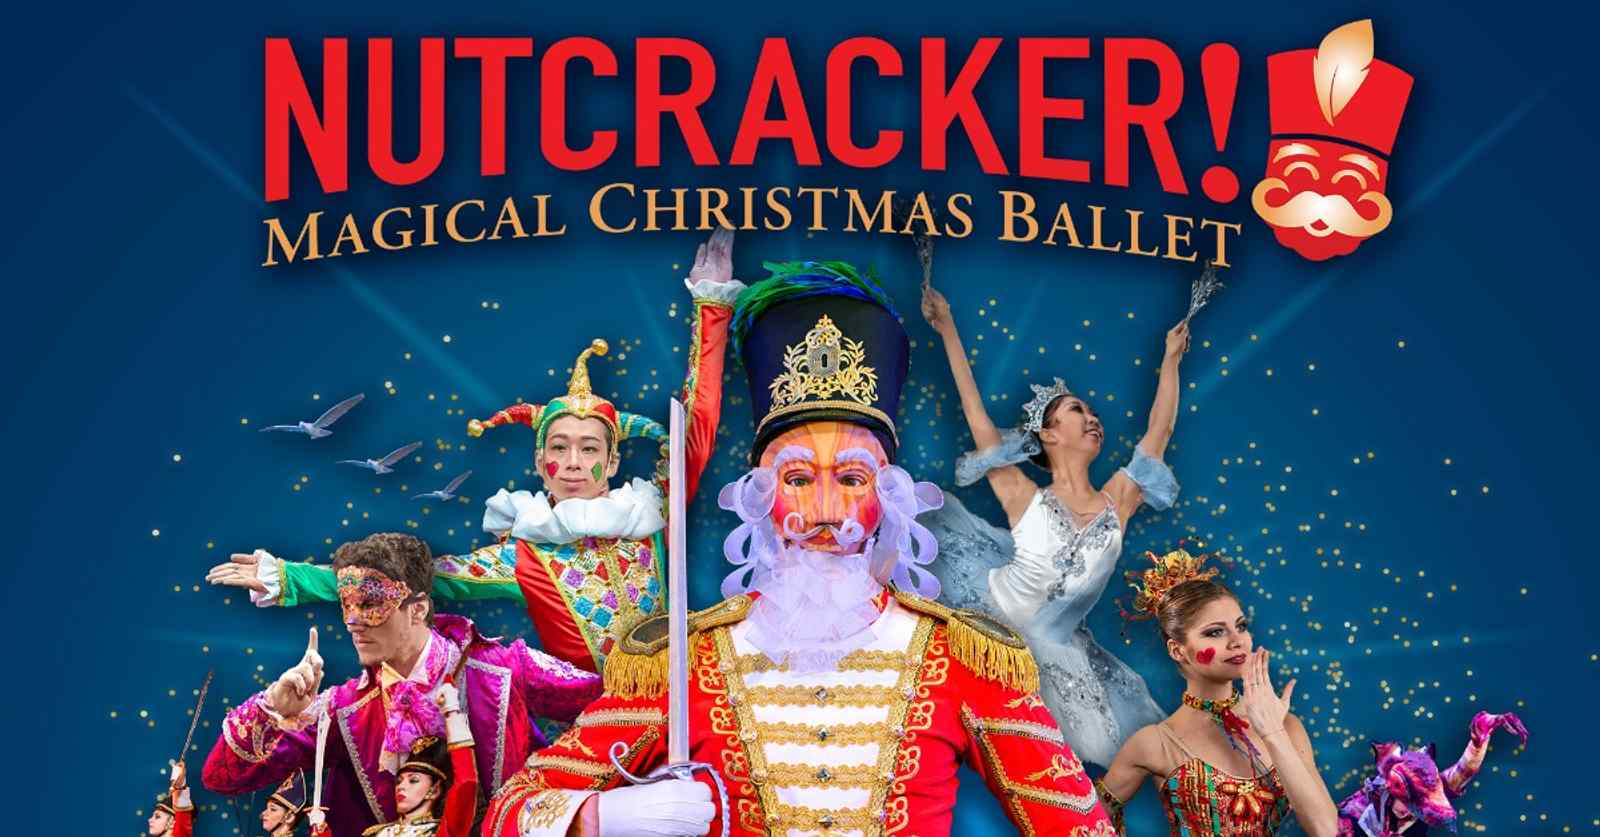 NUTCRACKER! MAGICAL CHRISTMAS BALLET